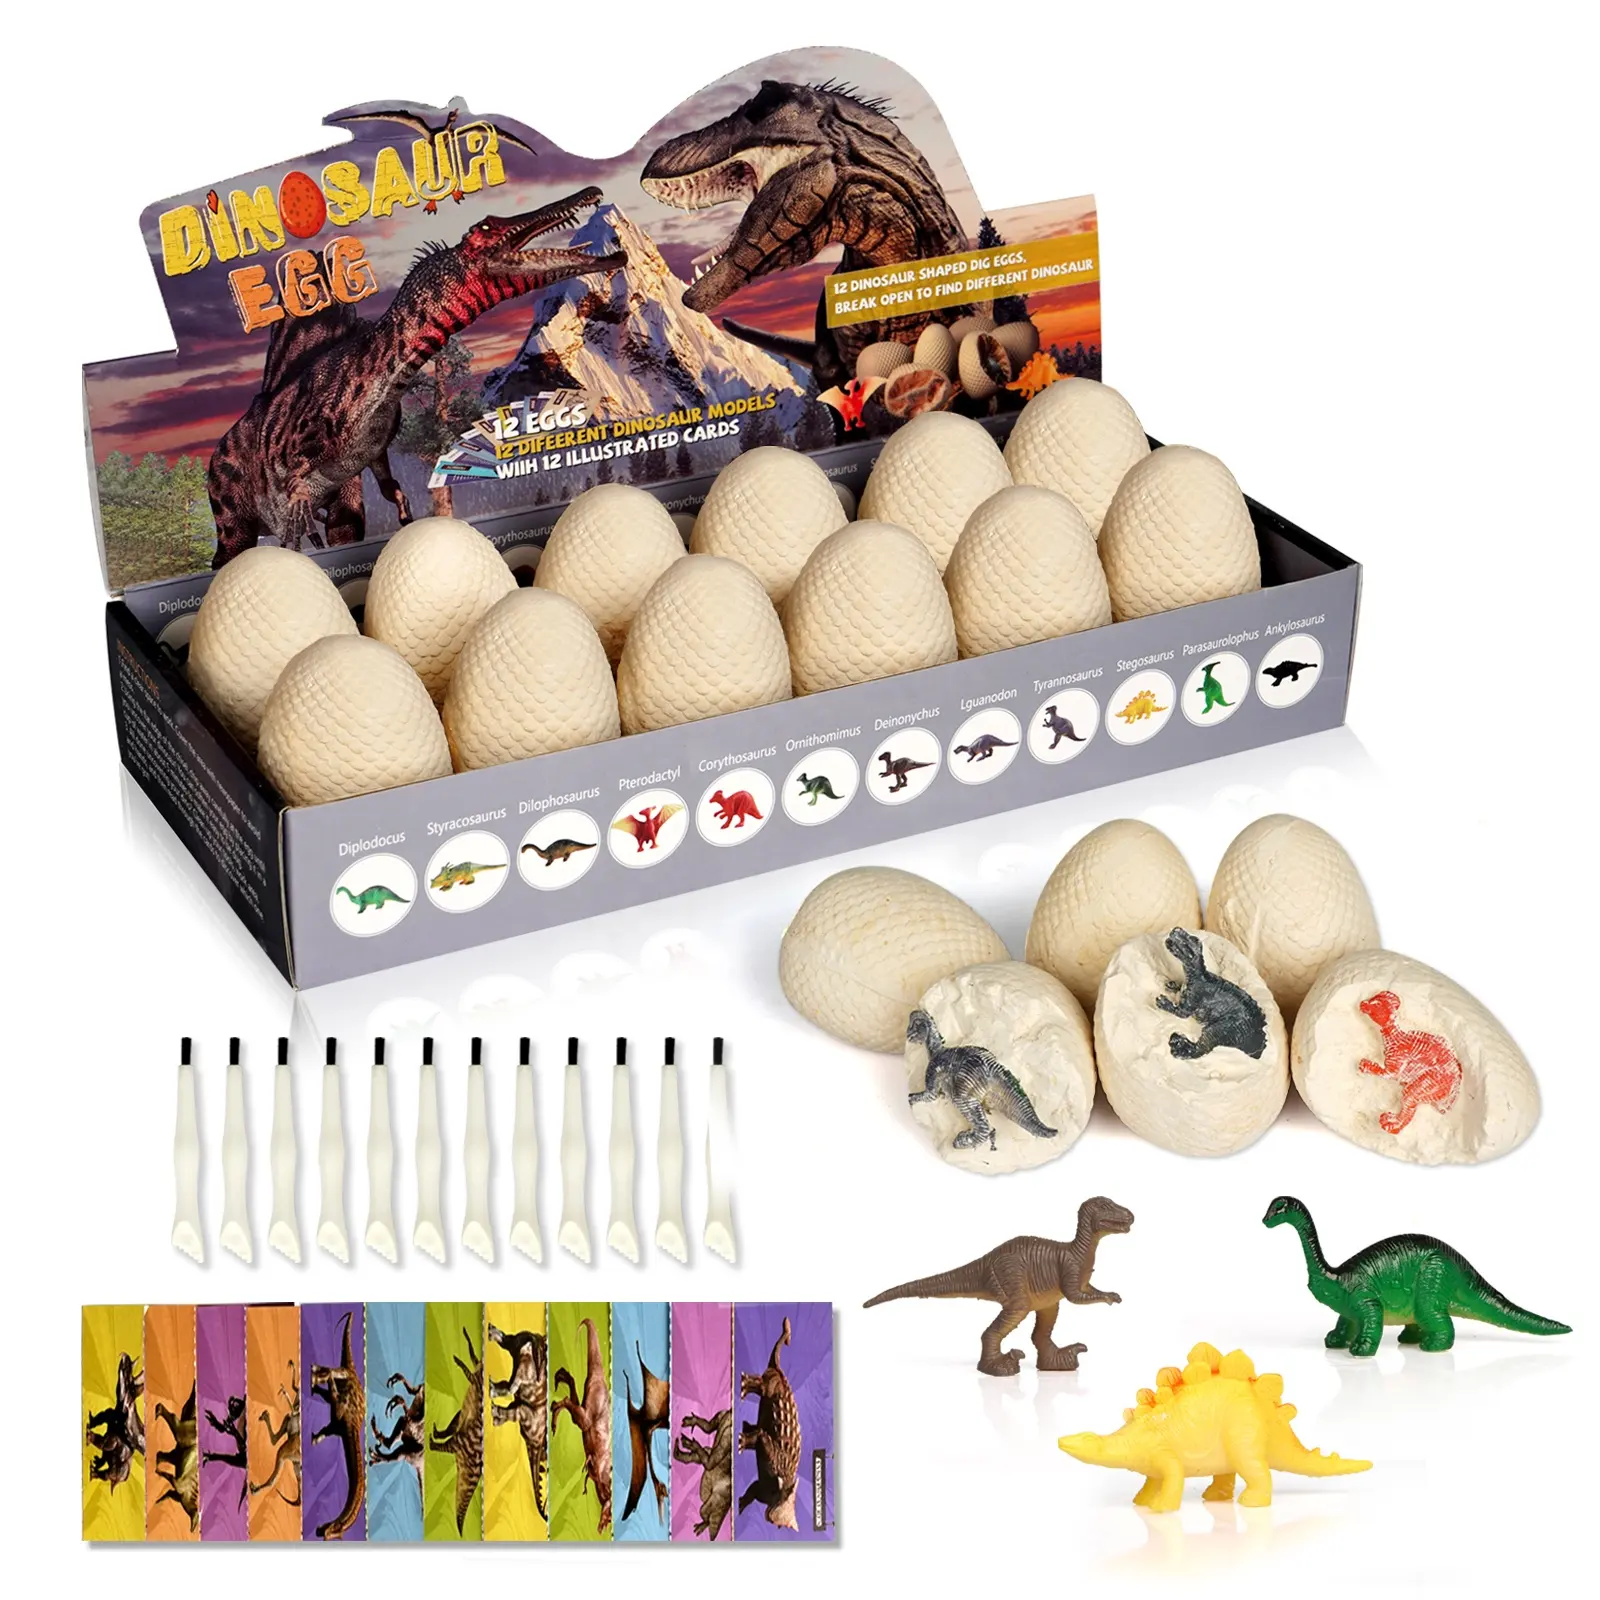 G8608 Escavação Dig Kit Dig It Out Dinossauro Ovo Fóssil Brinquedos 12 Dino Eggs Dig Set Kits Educacionais Ciência STEM Brinquedos Para Crianças